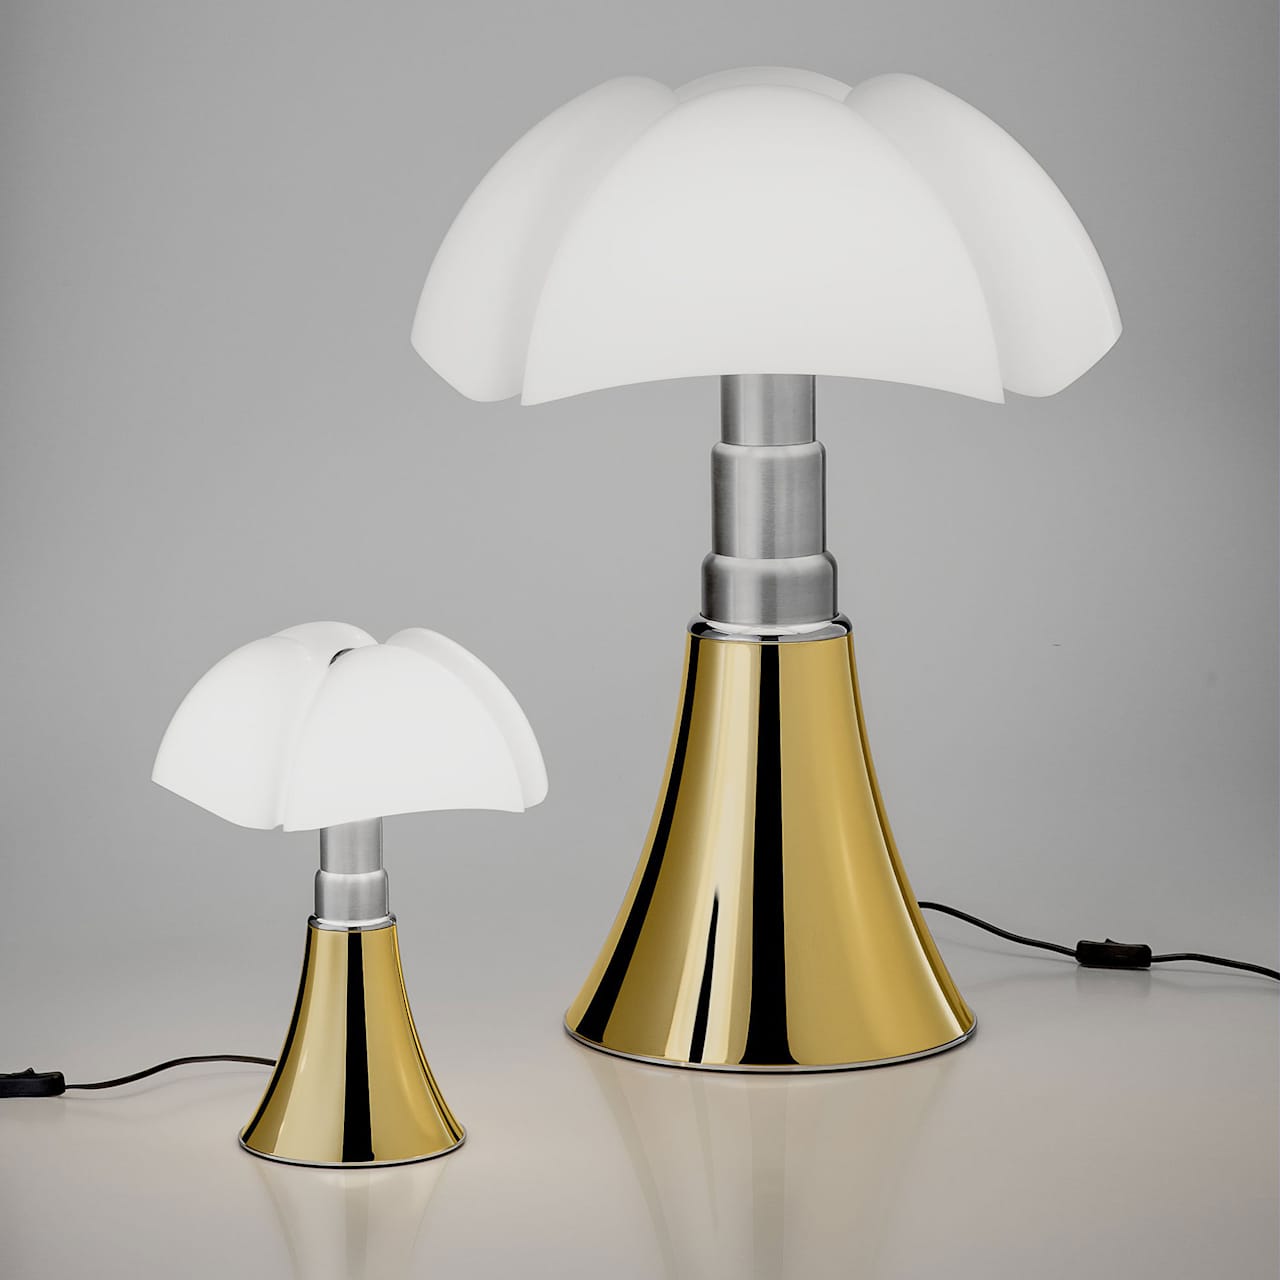 Minipipistrello Table Lamp 50th Anniversary